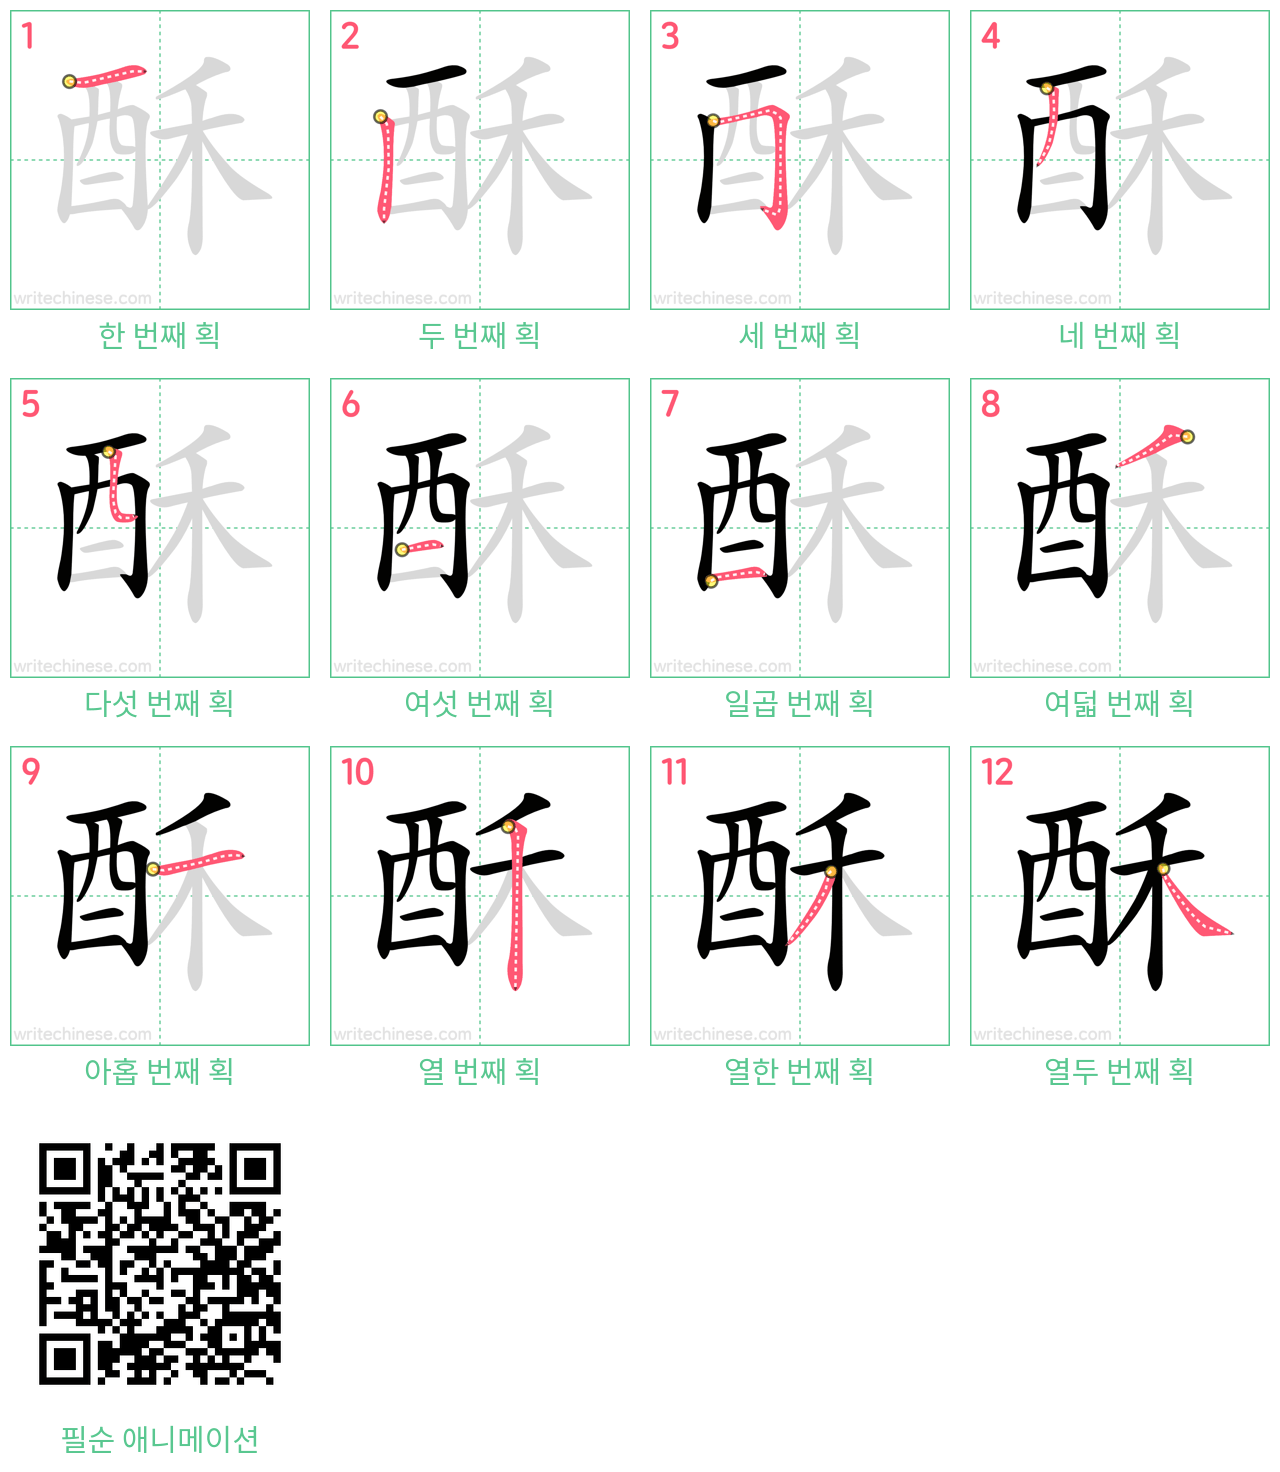 酥 step-by-step stroke order diagrams